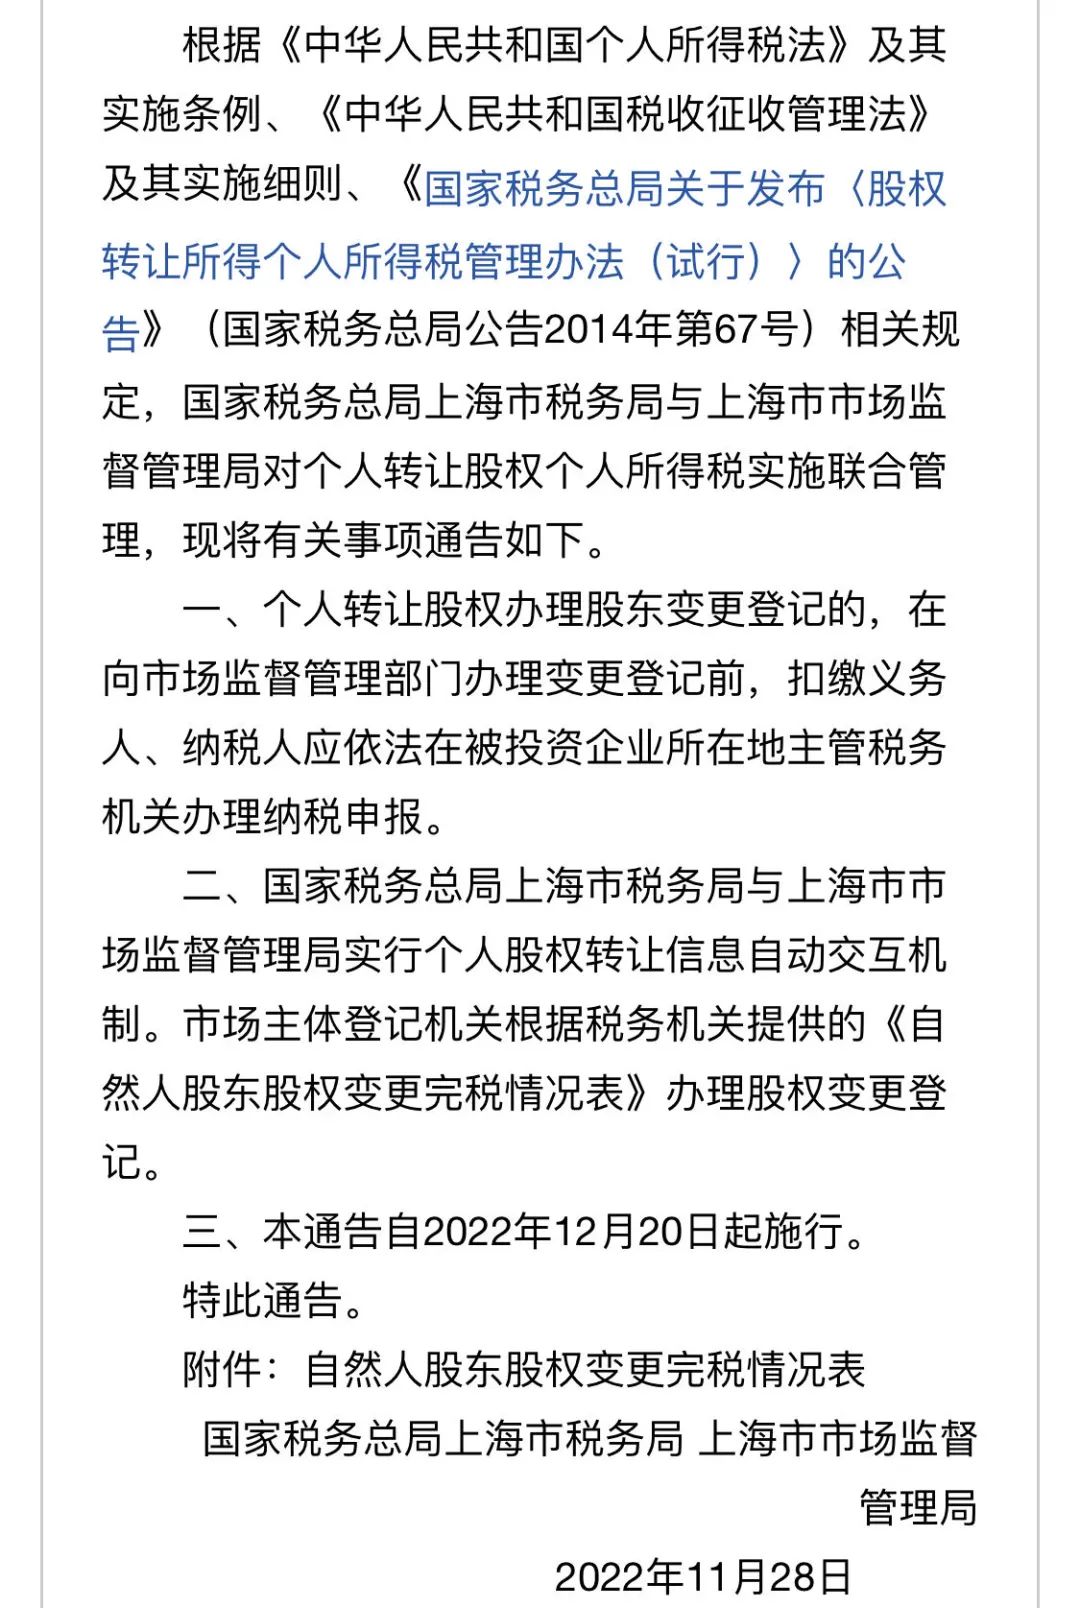 先缴税，后股转，上海工商税务联手规范个人股权转让审批流程丨贝斯哲